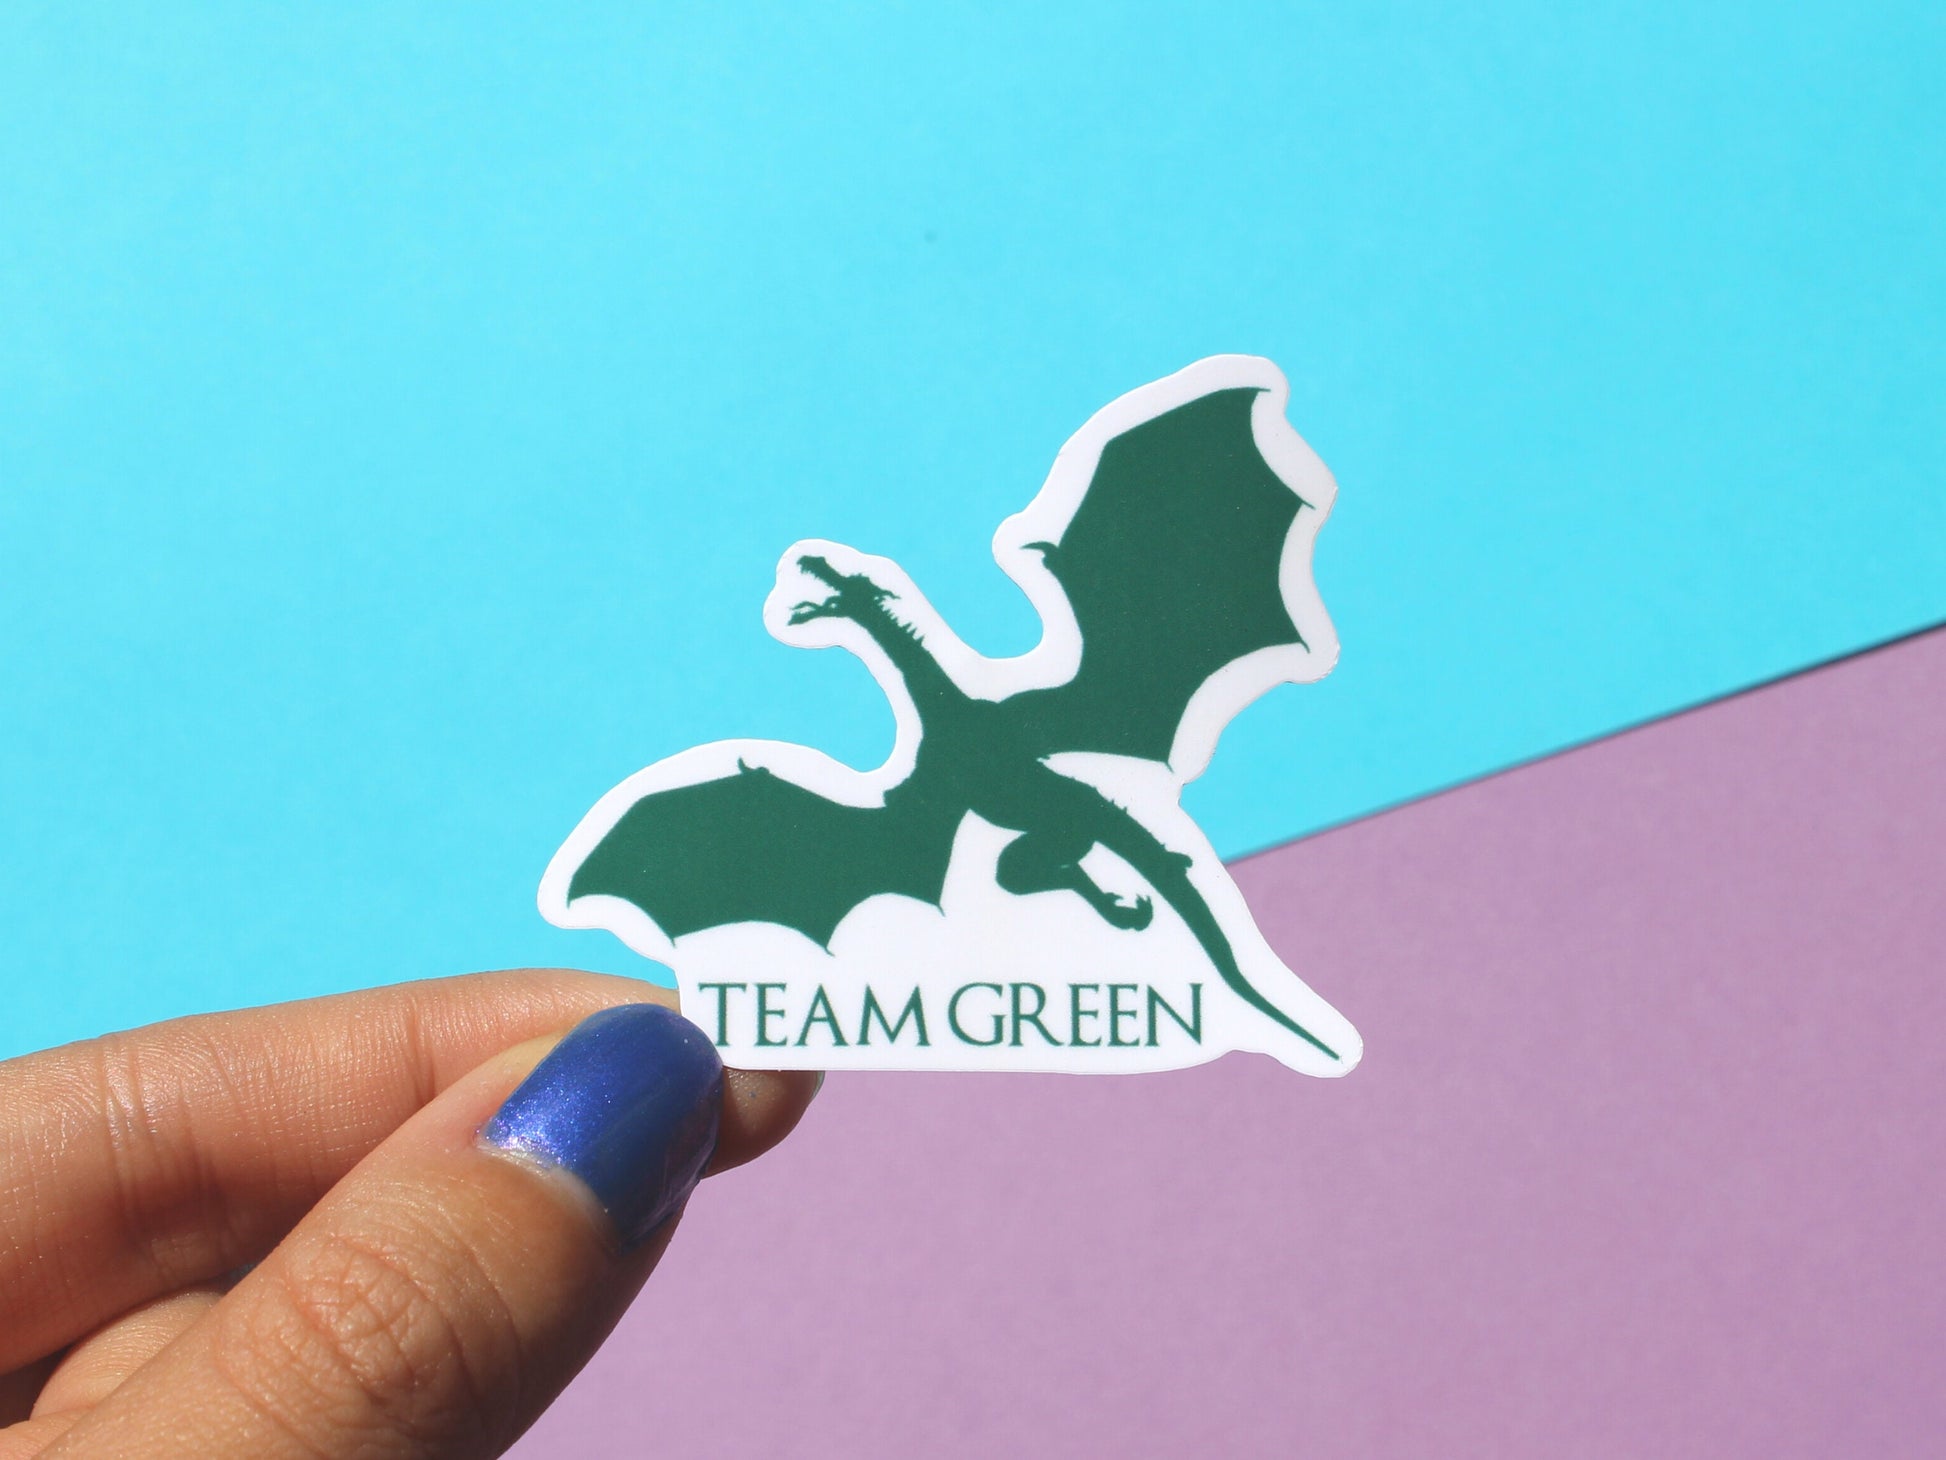 Team Black Sticker | Team Green Sticker | House of the Dragon Sticker | House of the Dragon Gifts | Game of Thrones